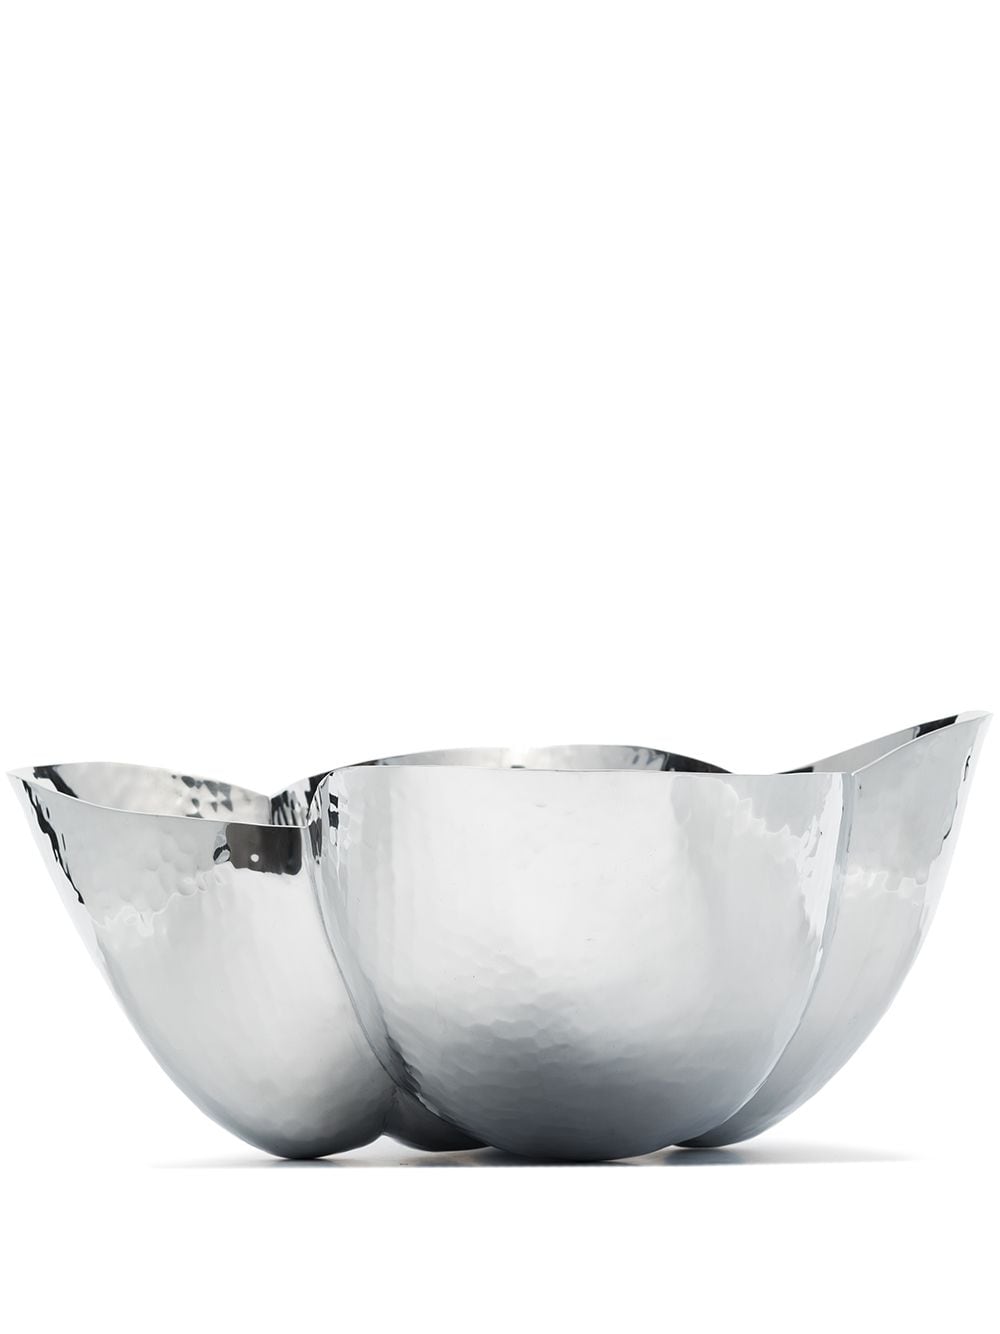 Tom Dixon Cloud hammered sculptural bowl - Silver von Tom Dixon